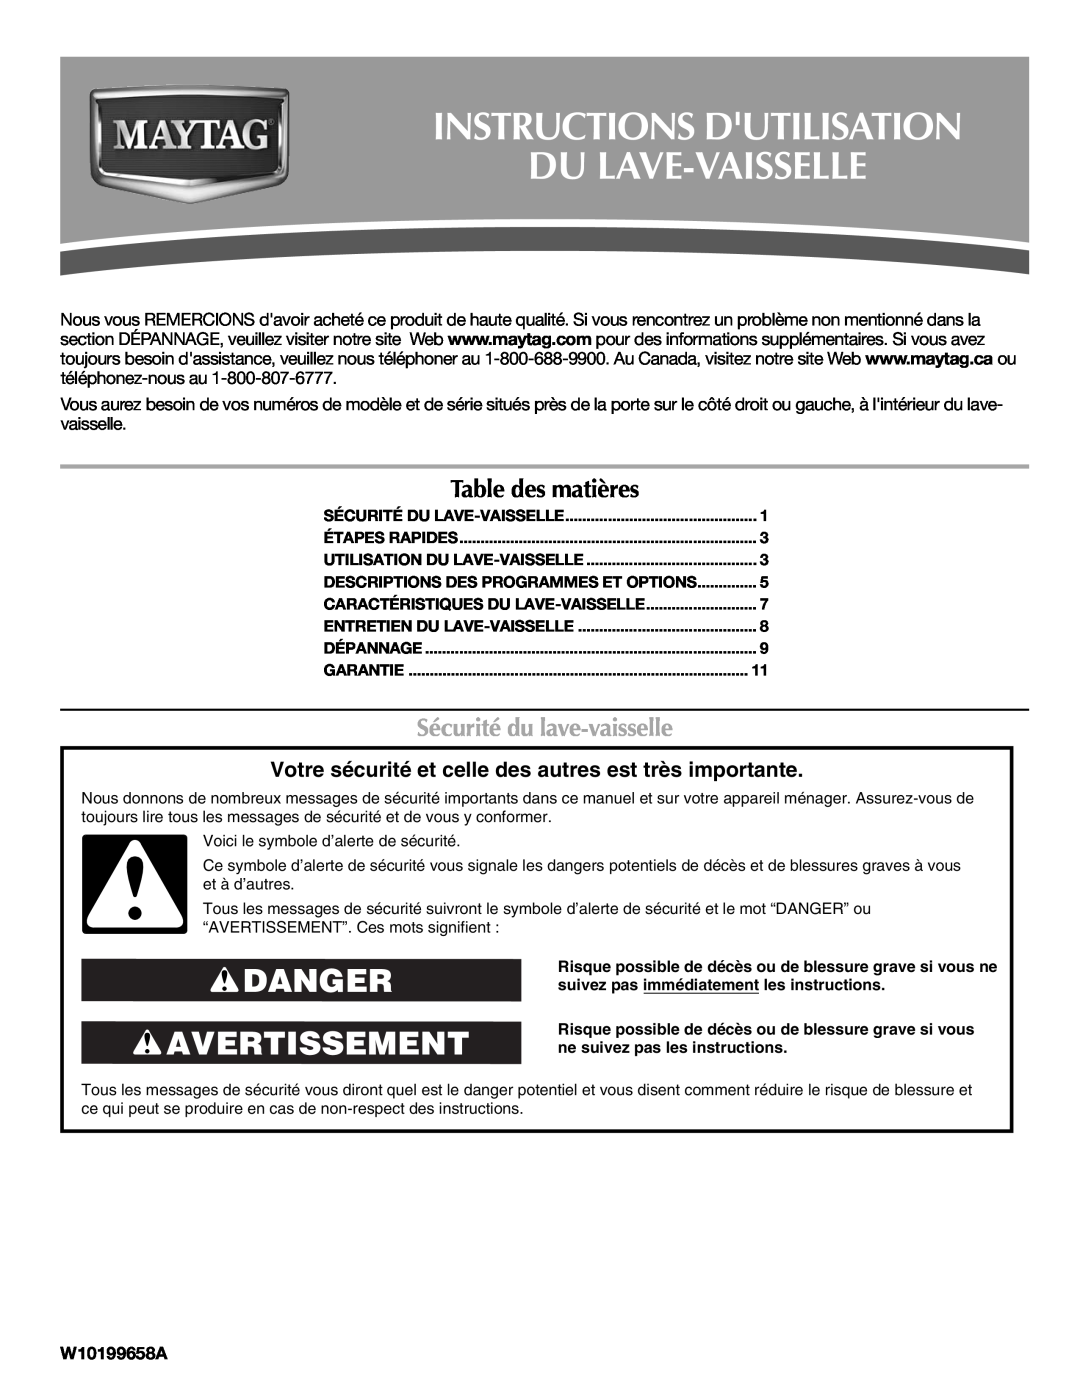 Maytag W10199658A, W10199659A warranty Instructions Dutilisation Du Lave-Vaisselle, Danger Avertissement, Table des matières 